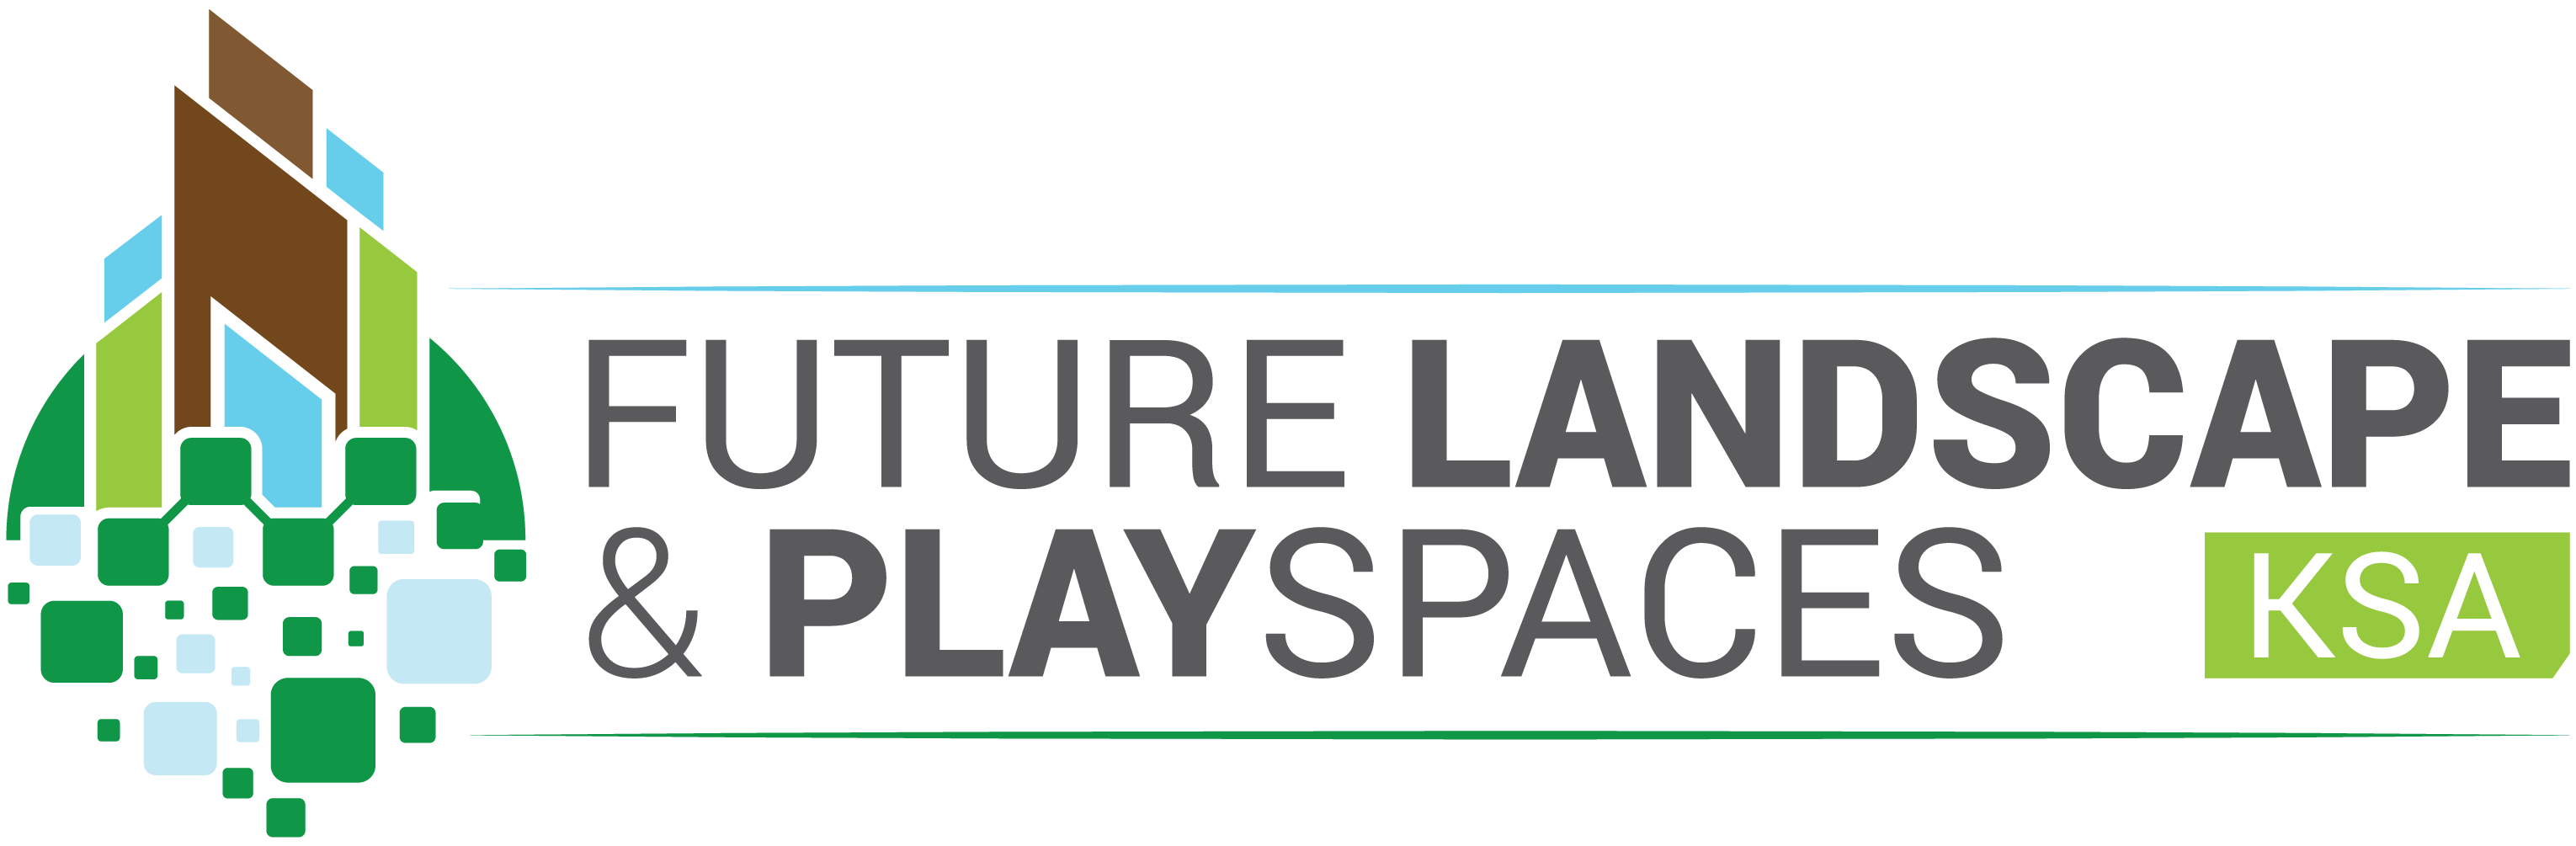 沙特阿拉伯利雅得国际未来景观及户外空间展览会FUTURE LANDSCAPE AND PLAYSPACES KSA